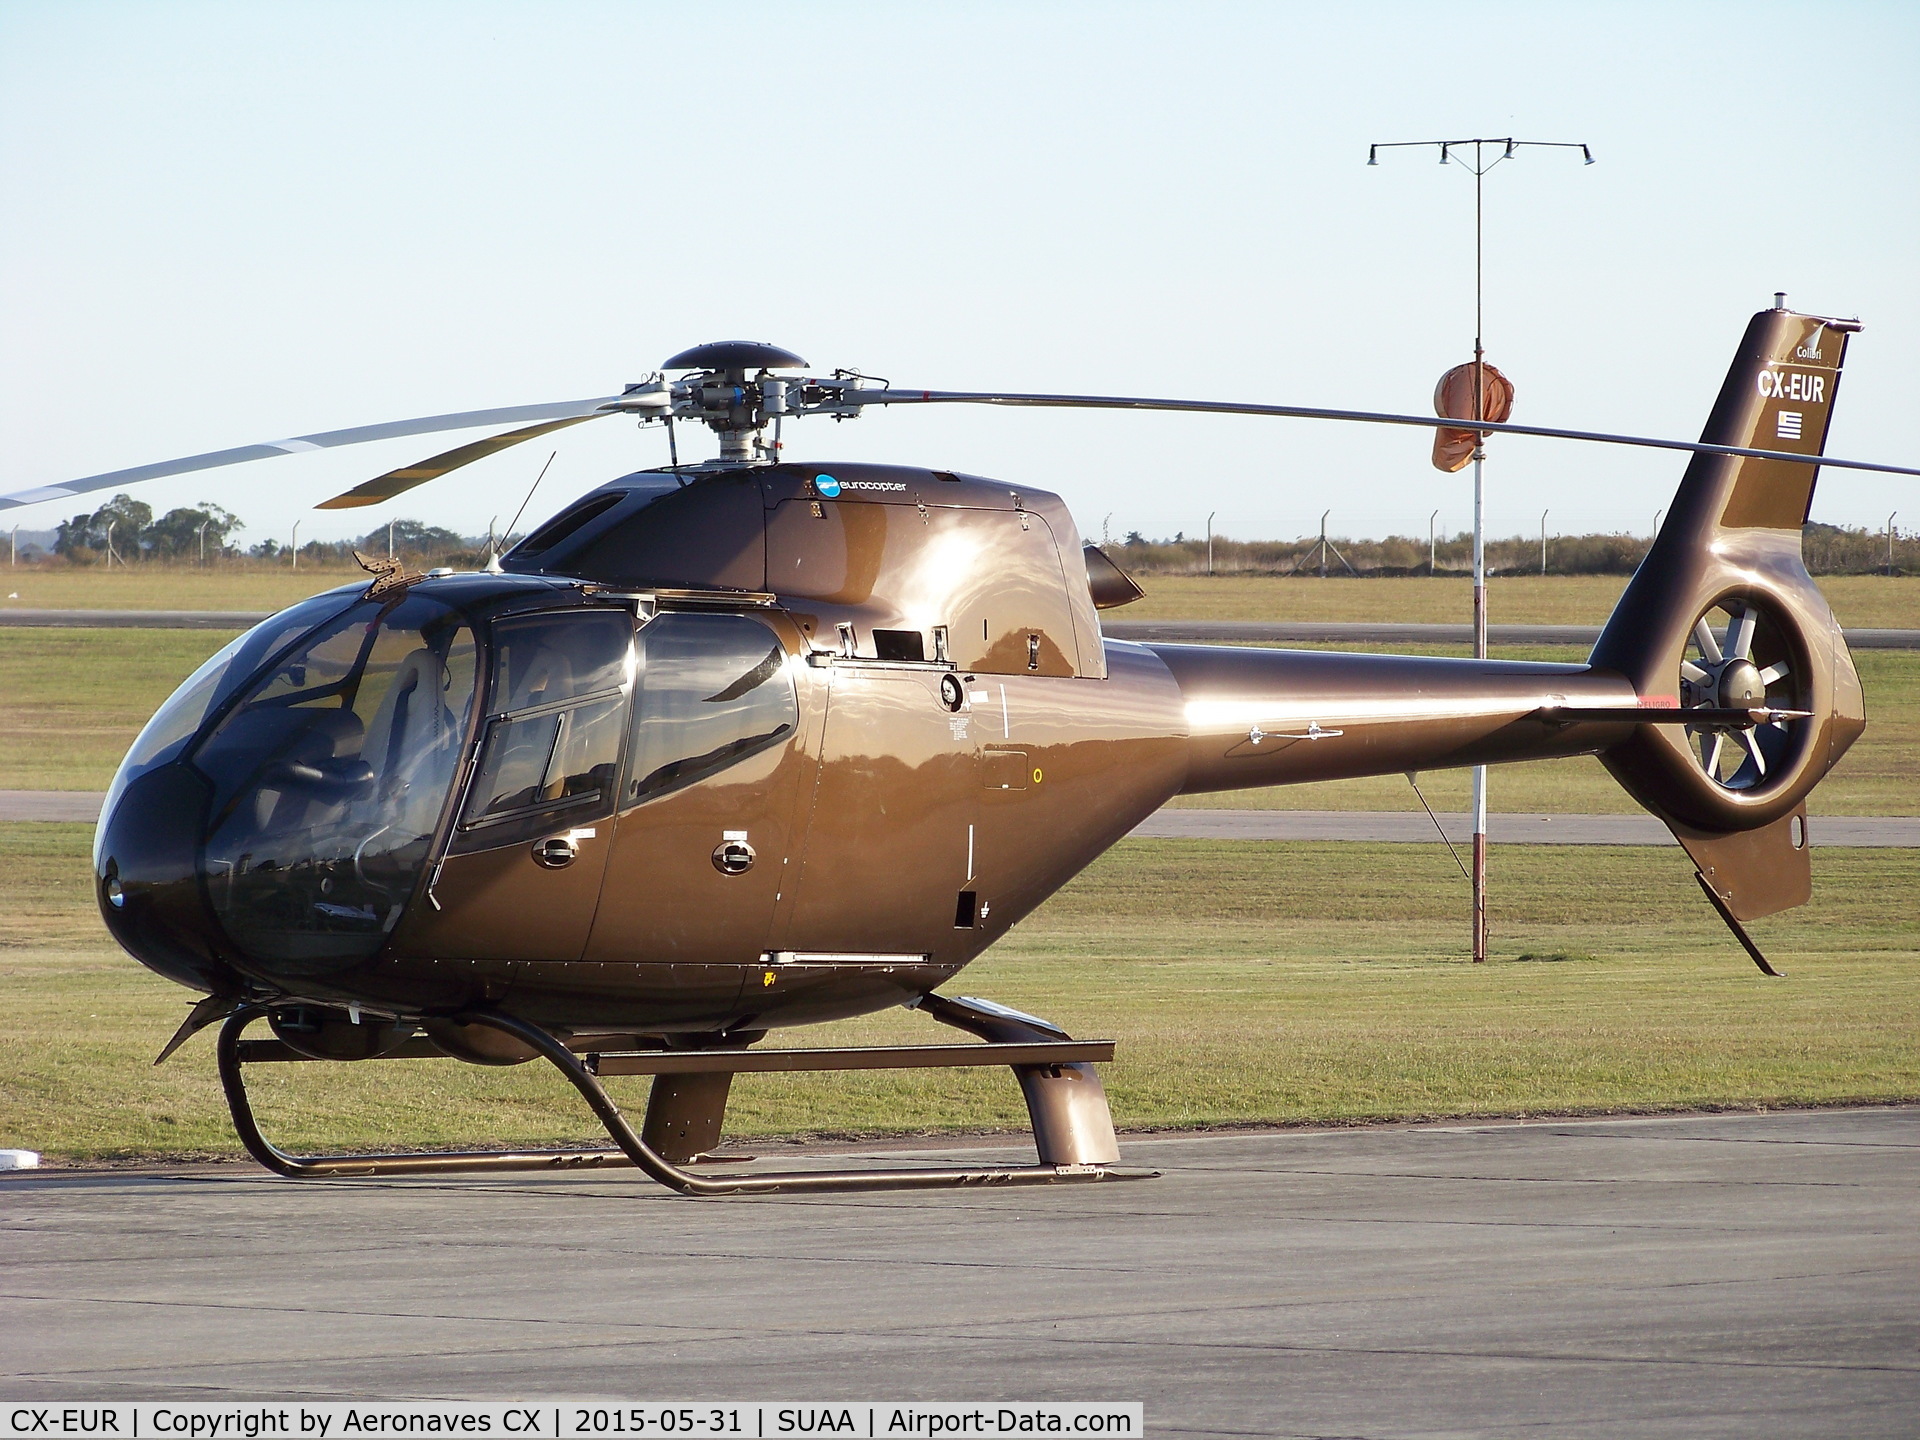 CX-EUR, 2008 Eurocopter EC-120B Colibri C/N 1567, 31/05/2015 en Aeropuerto Ángel S. Adami.
En venta.